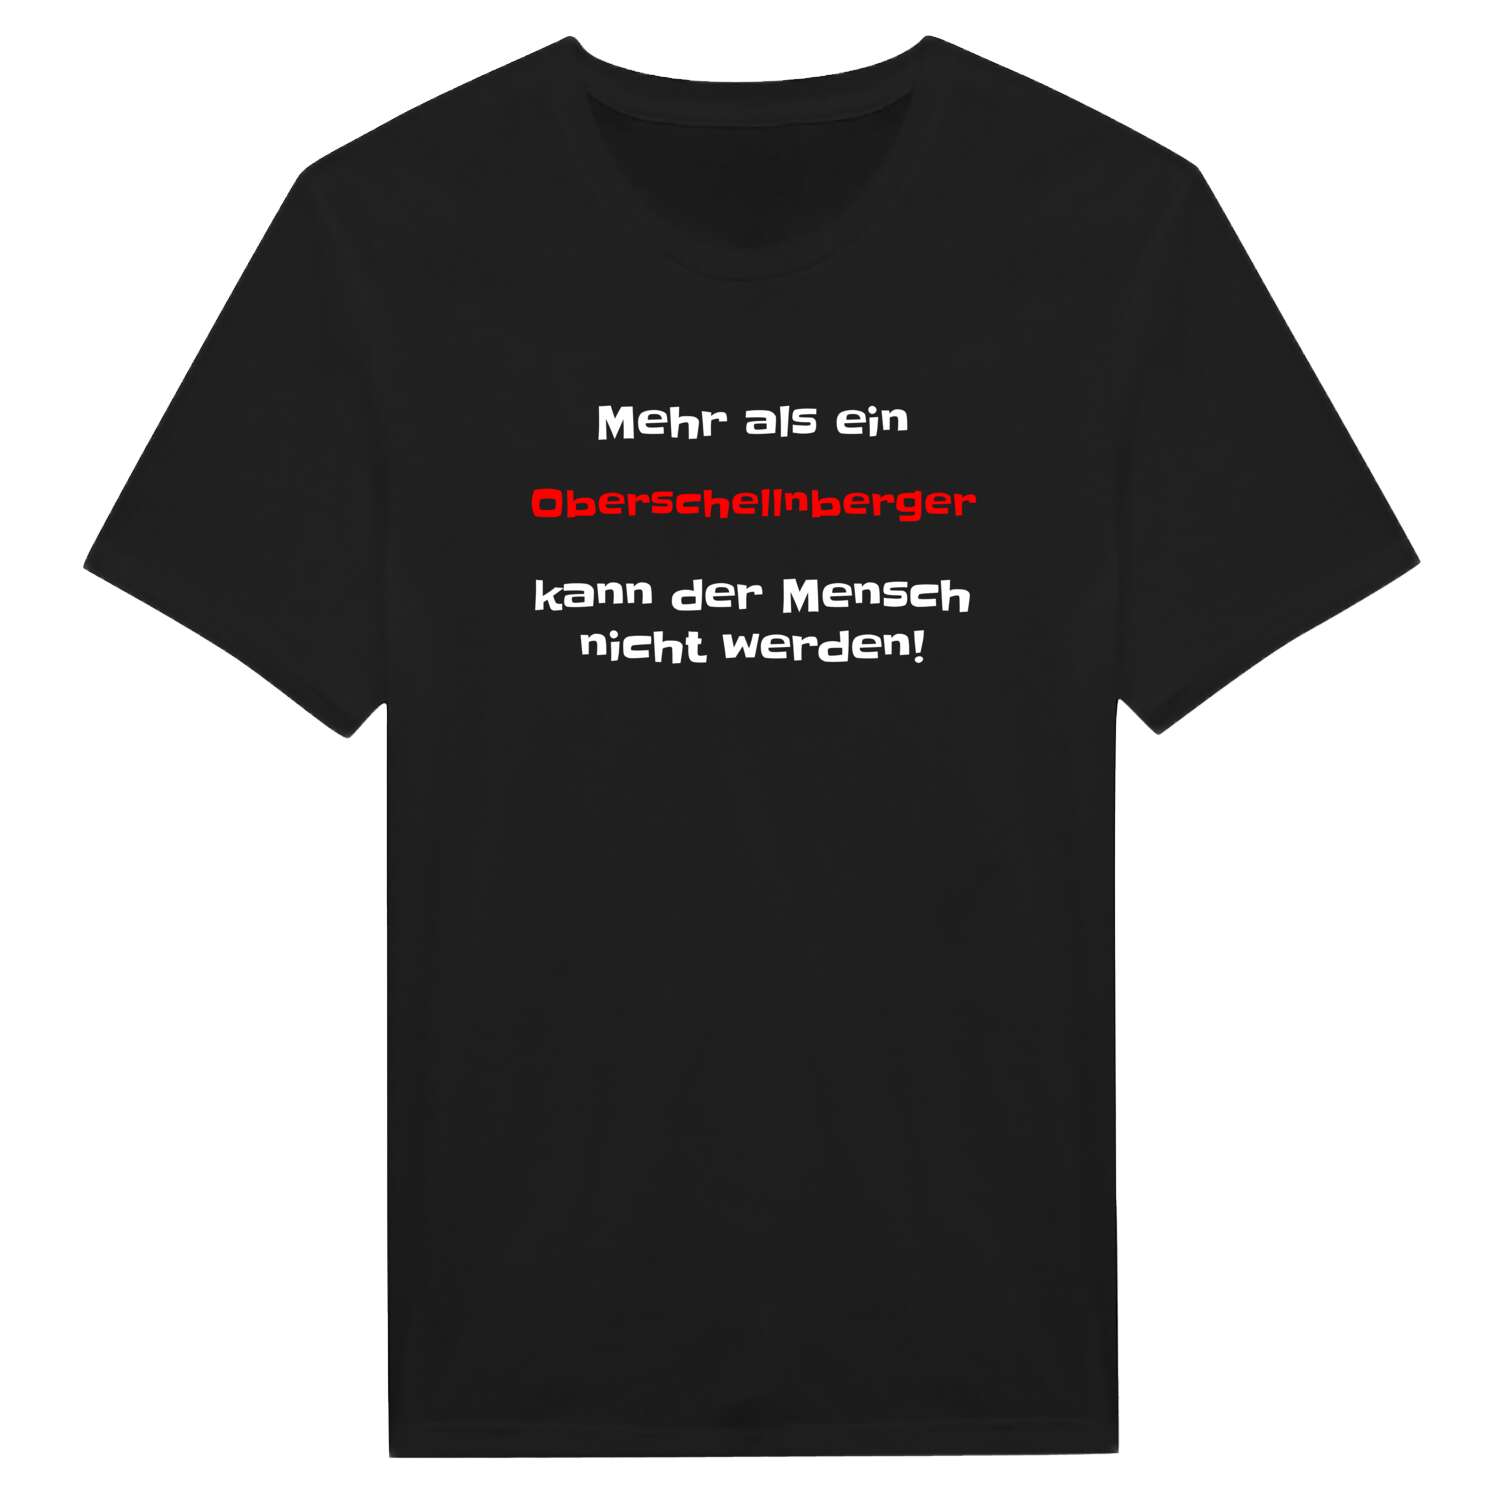 Oberschellnberg T-Shirt »Mehr als ein«